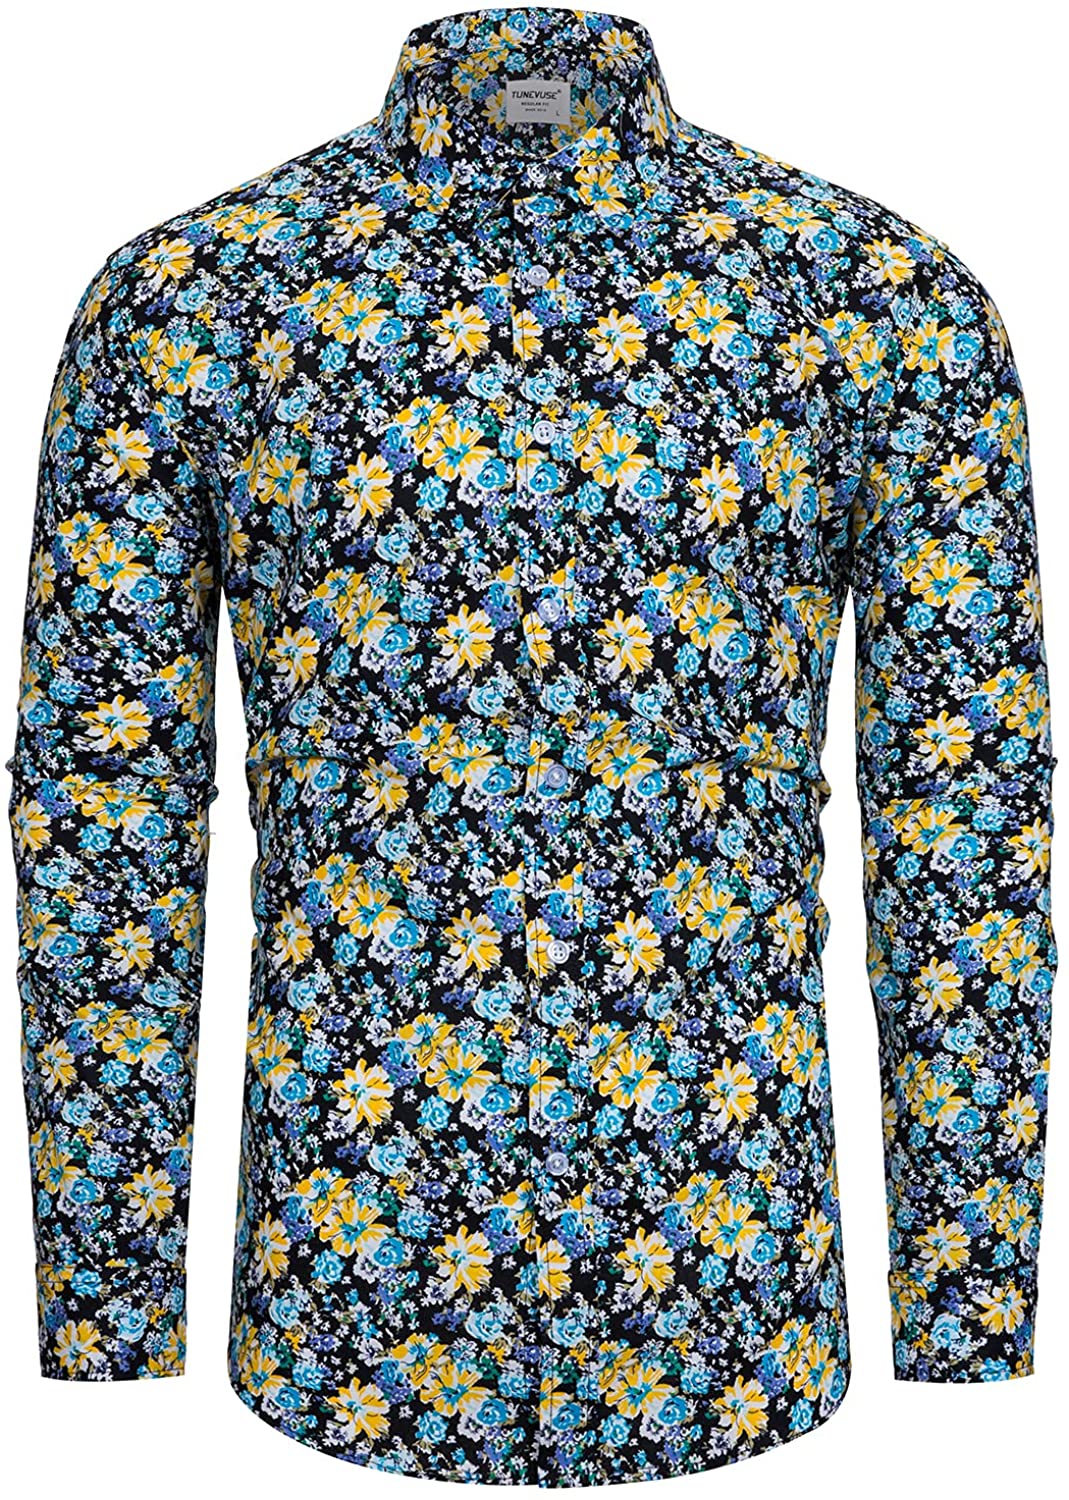 TUNEVUSE Mens Floral Dress Shirt Long Sleeve Hawaiian Button Down Flower  Pattern | eBay